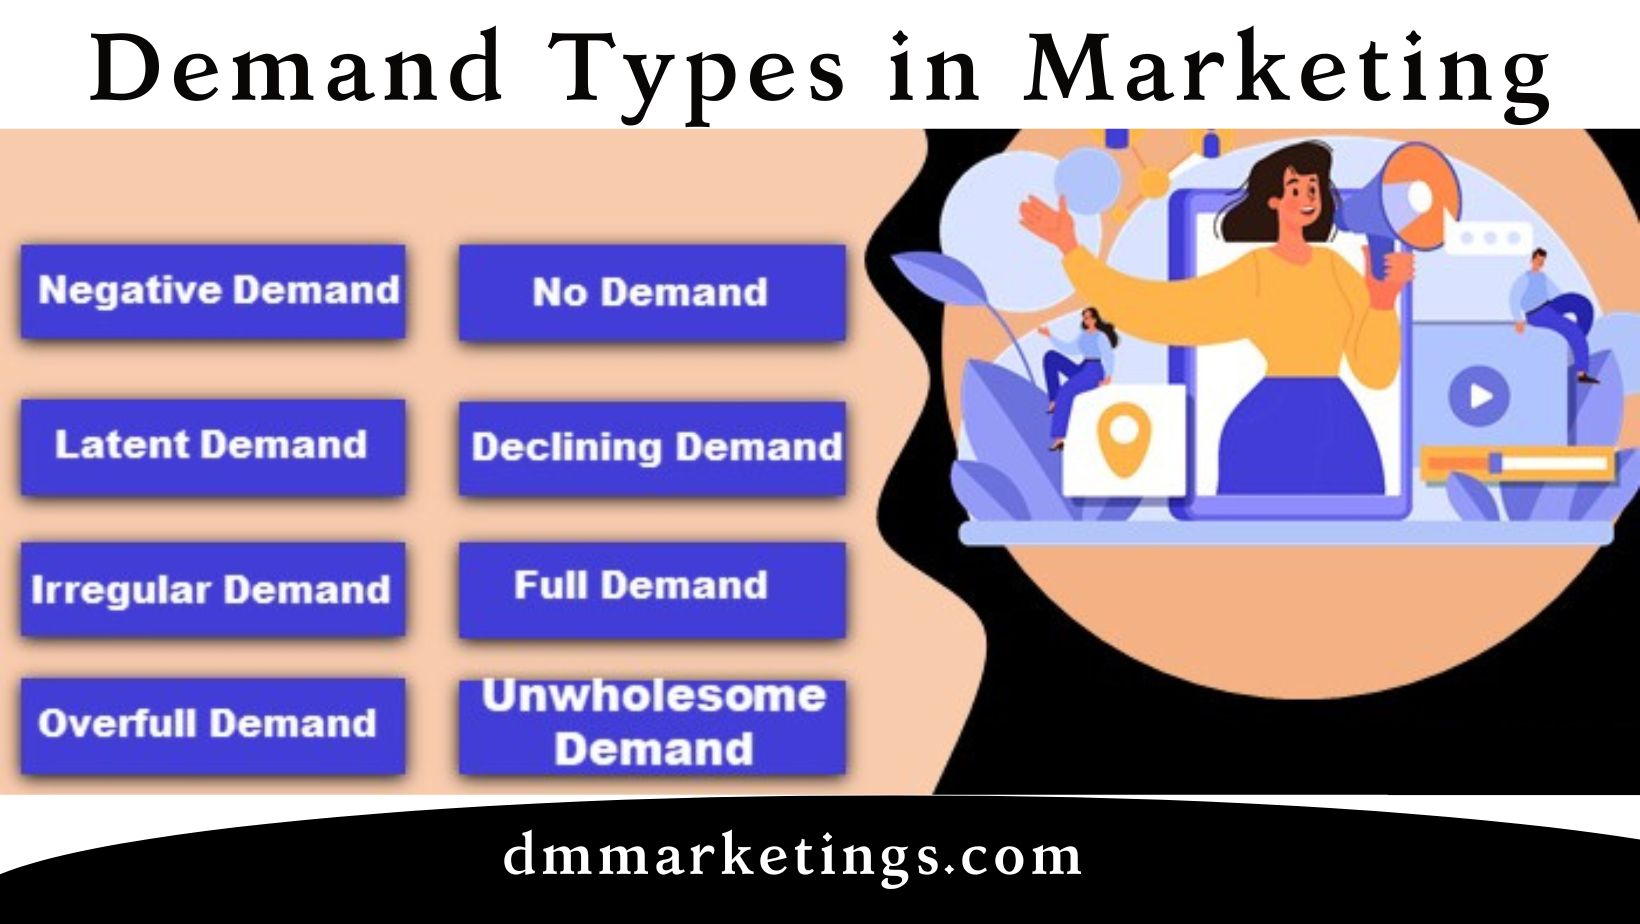 Demand Types in Marketing